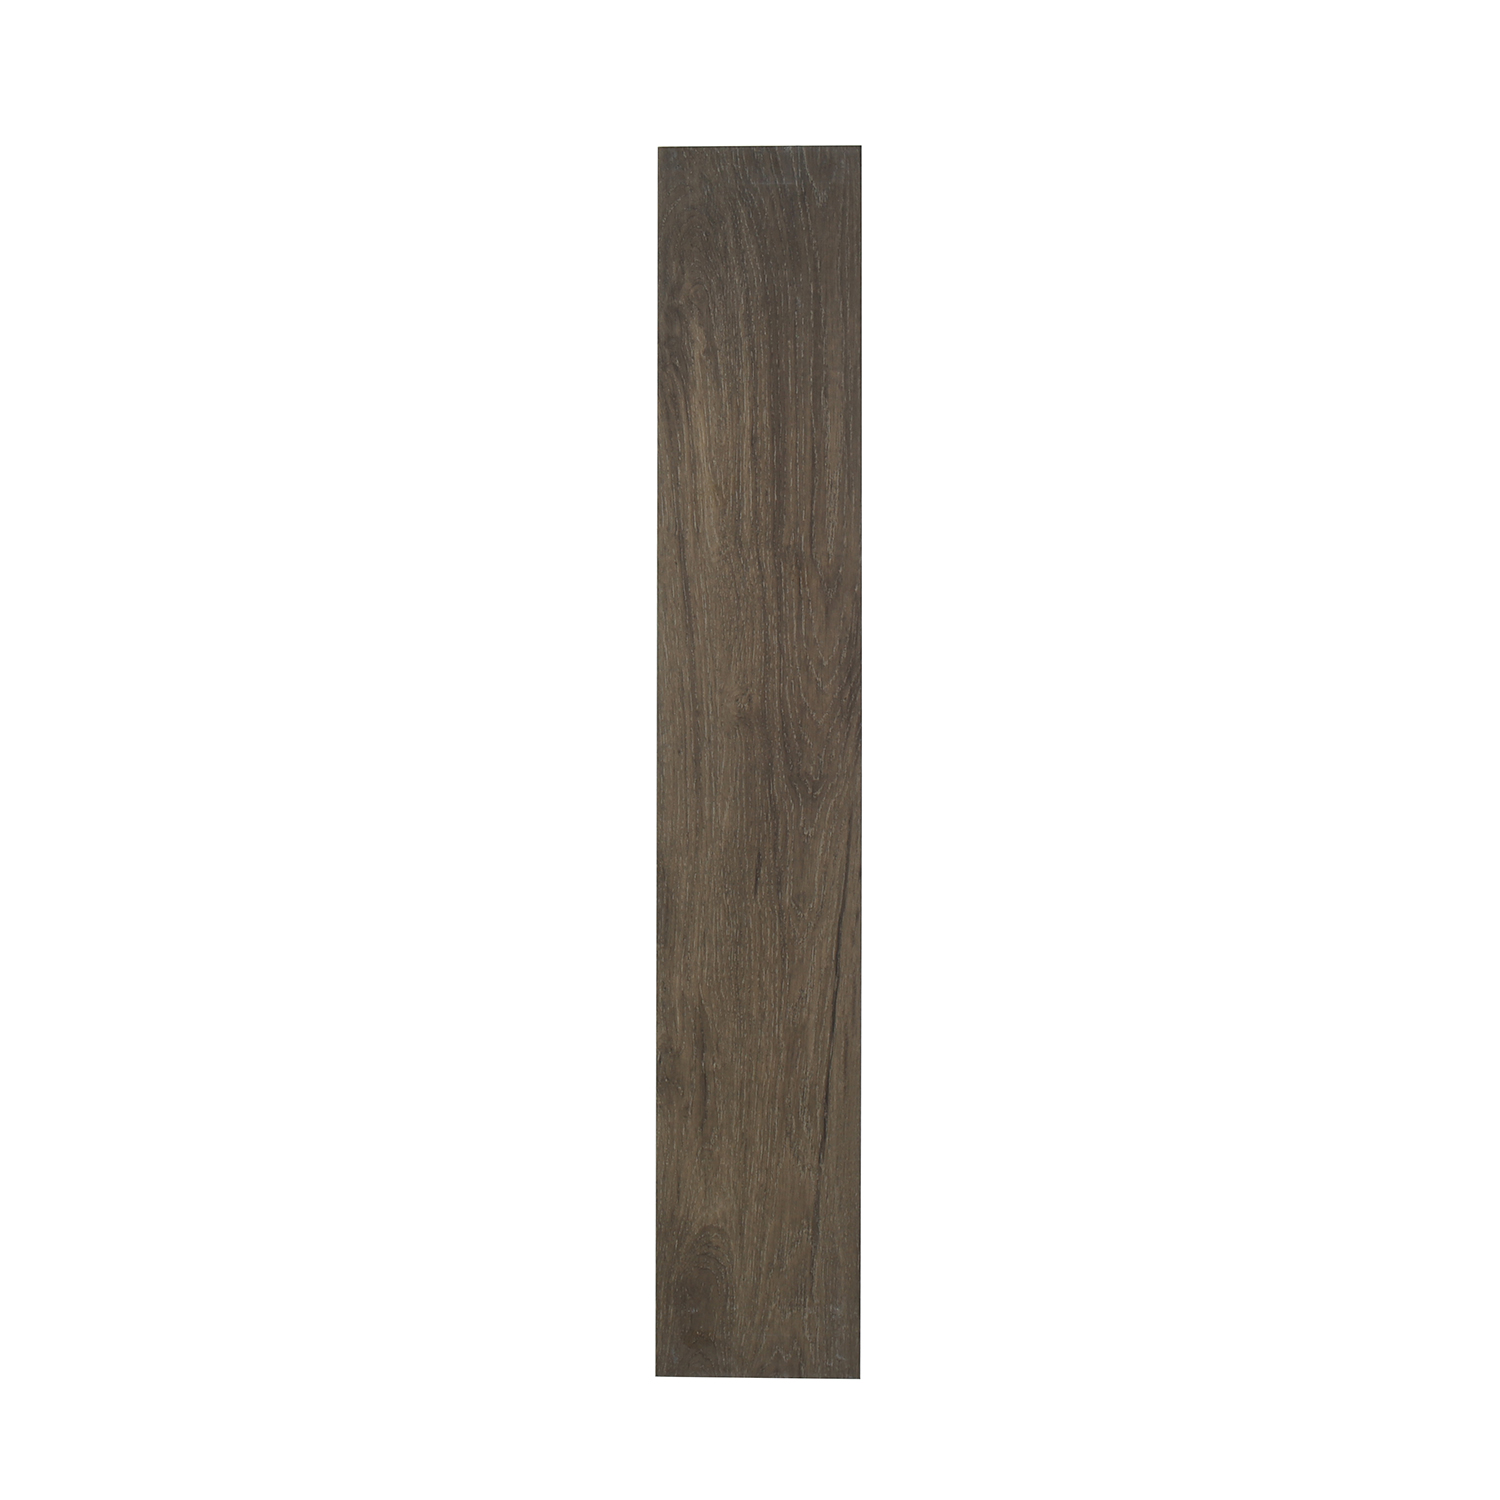 3D Inkjet Like Natural wood looks wooden floor tiles-AJ915108M-150x900